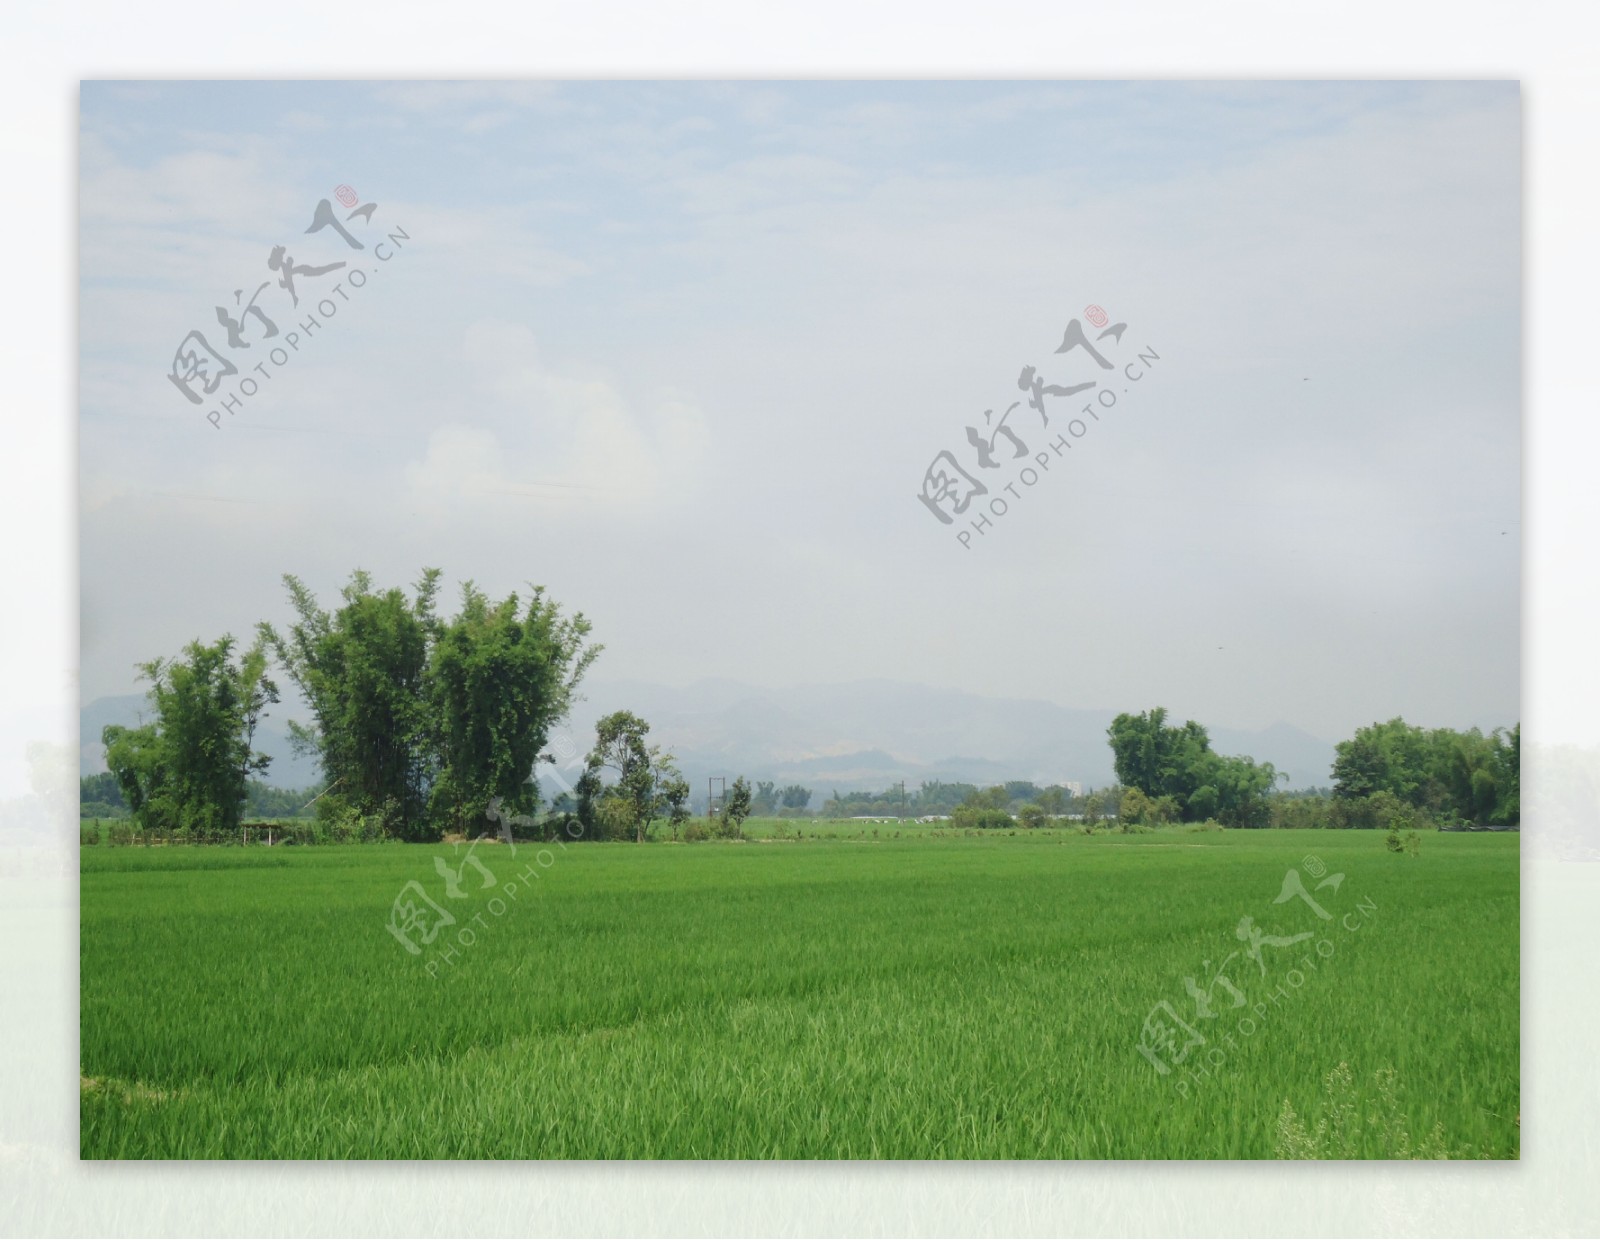 农田水稻自然风景图片